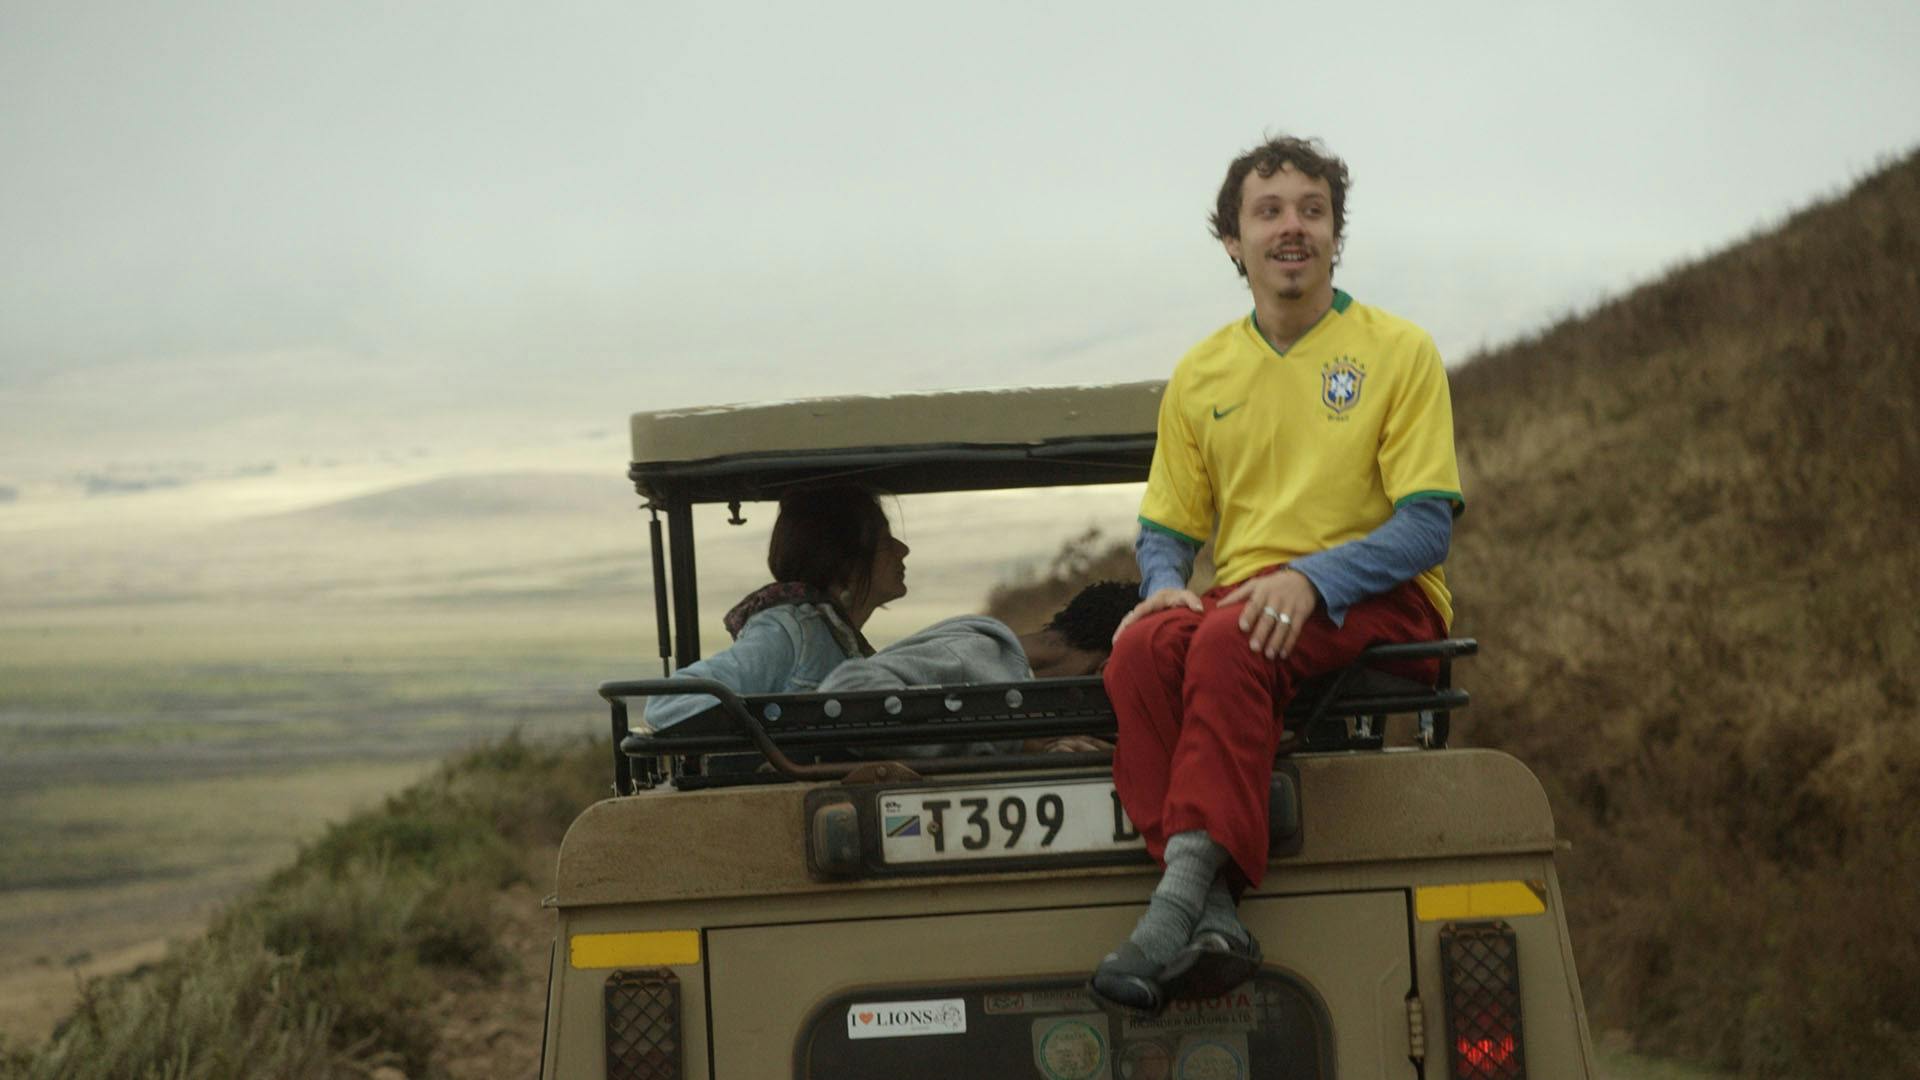 Homem com a camisa da seleção brasileira sentado na caçamba de um jipe, com horizonte de montanhas ao fundo.